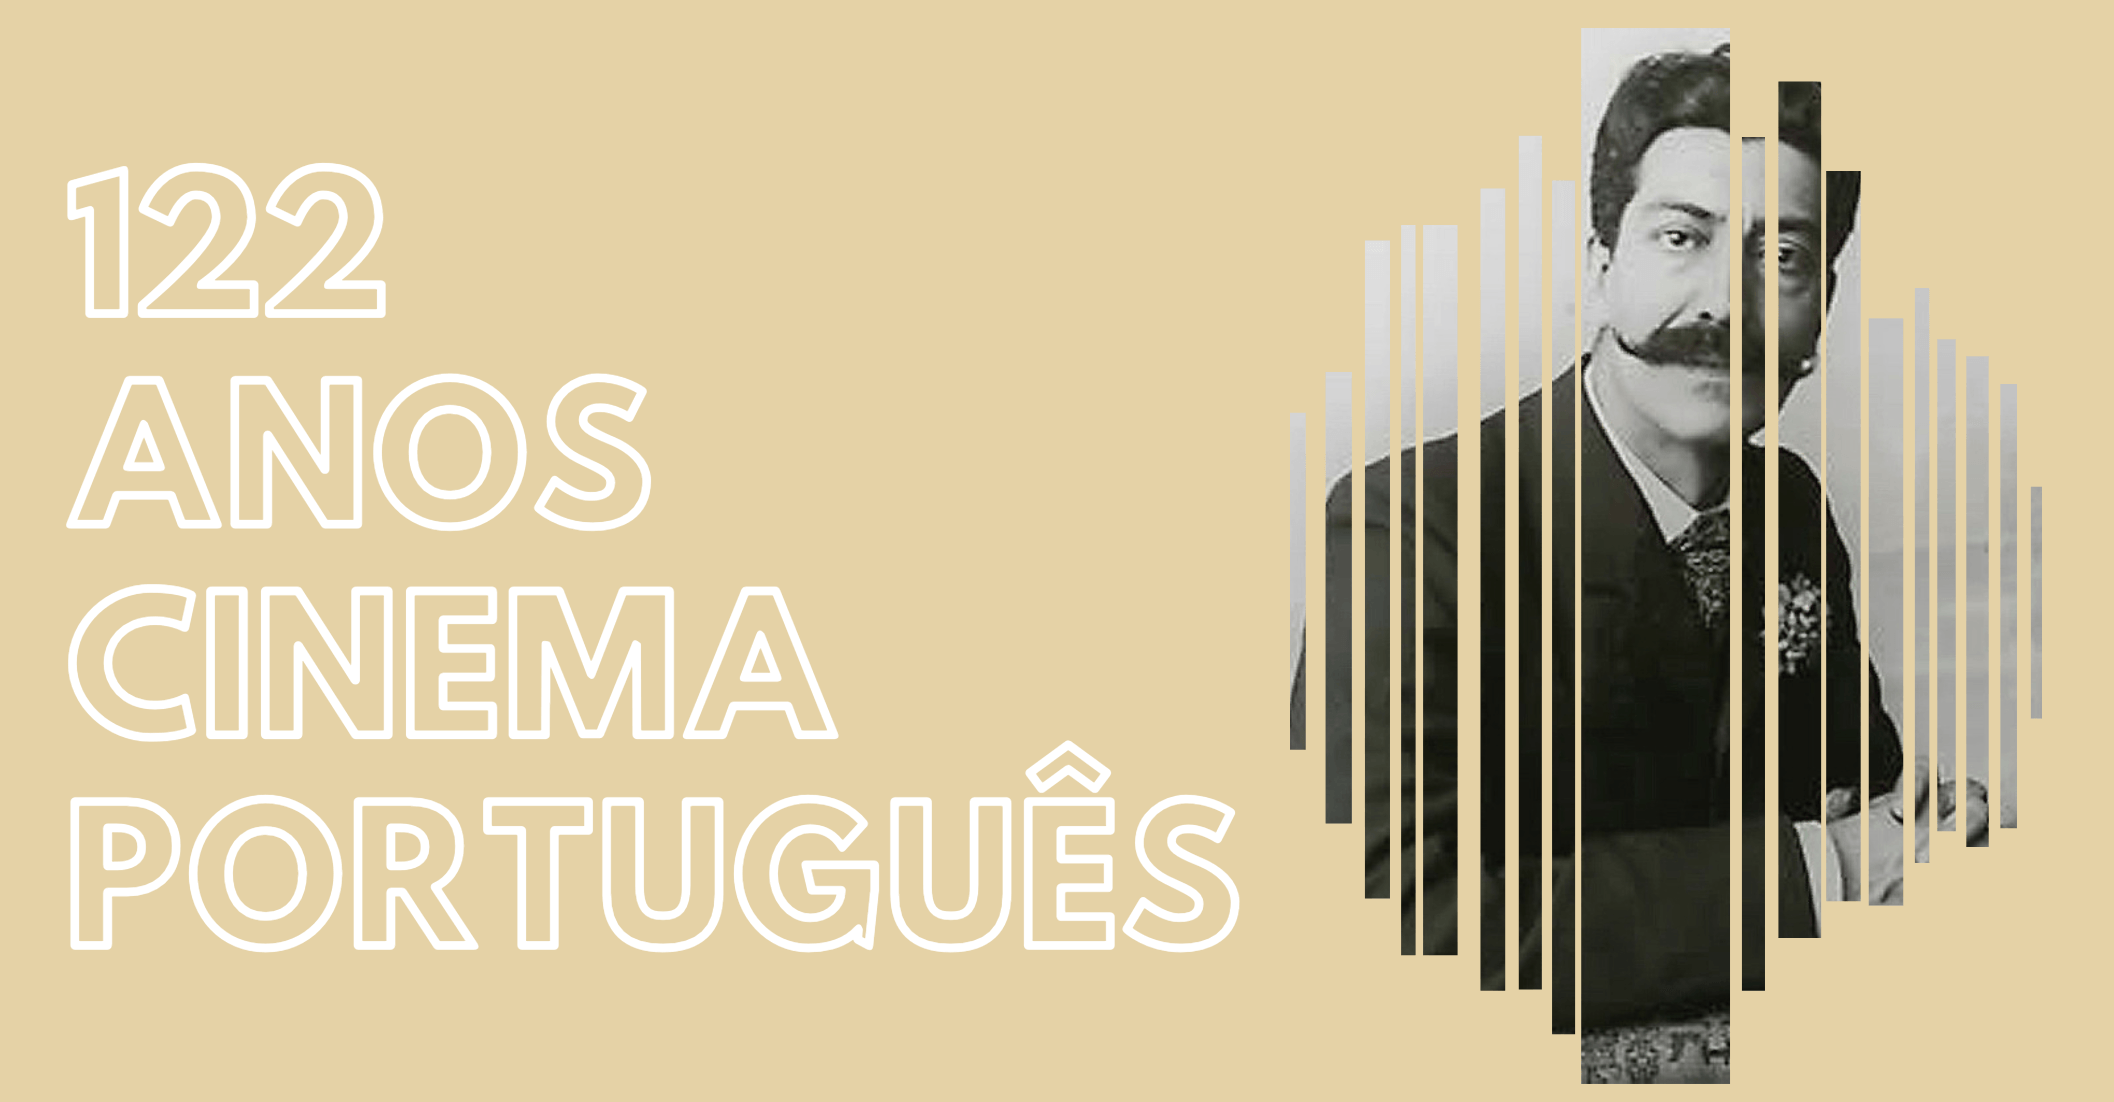 122 anos de Cinema Portugues 1